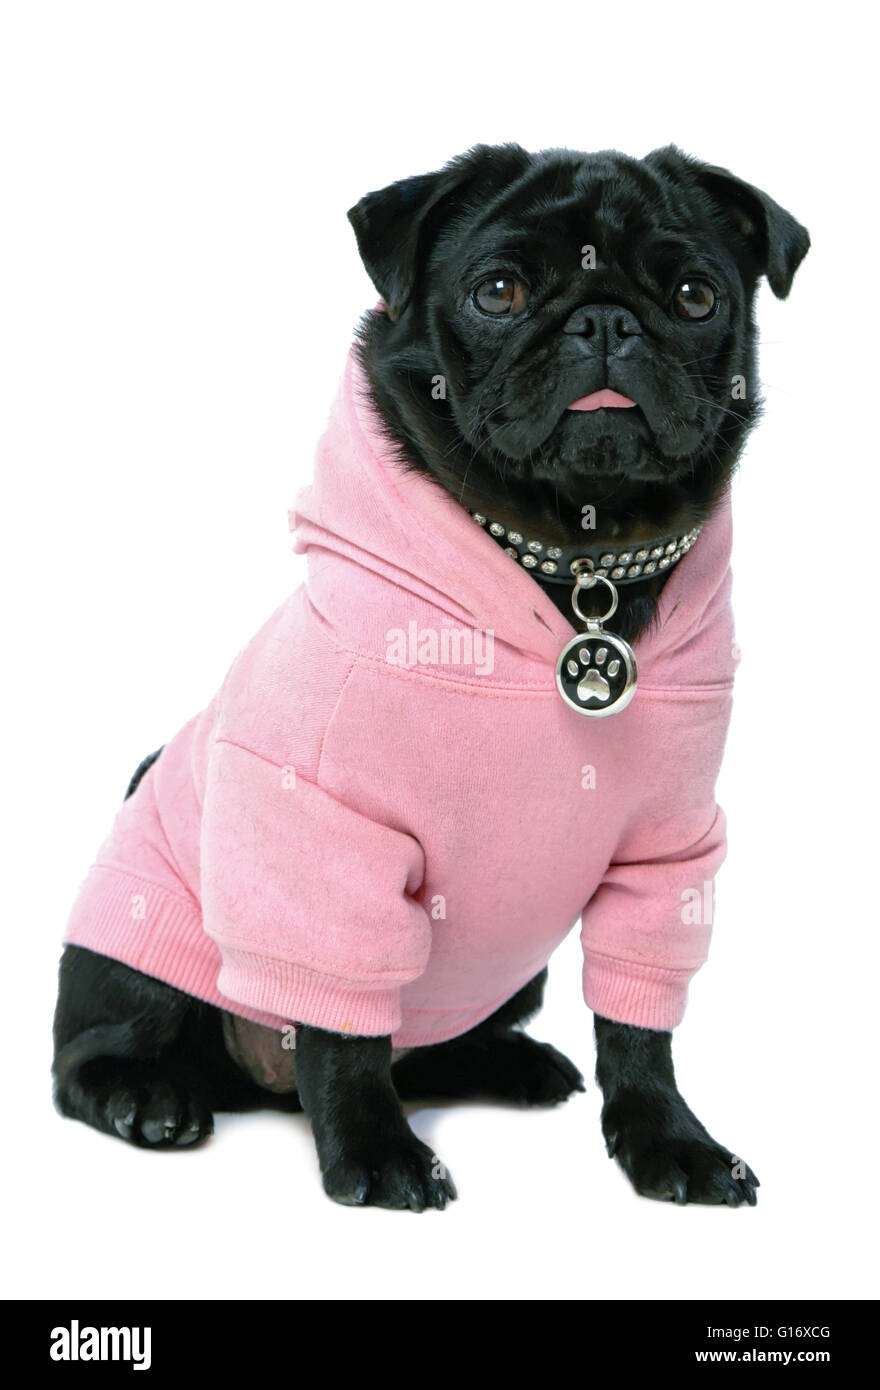 Kleine schwarze Mops Welpen Hund in rosa Kleidung auf weißem Hintergrund isoliert Model Release: Nein Property Release: Ja (Hund). Stockfoto